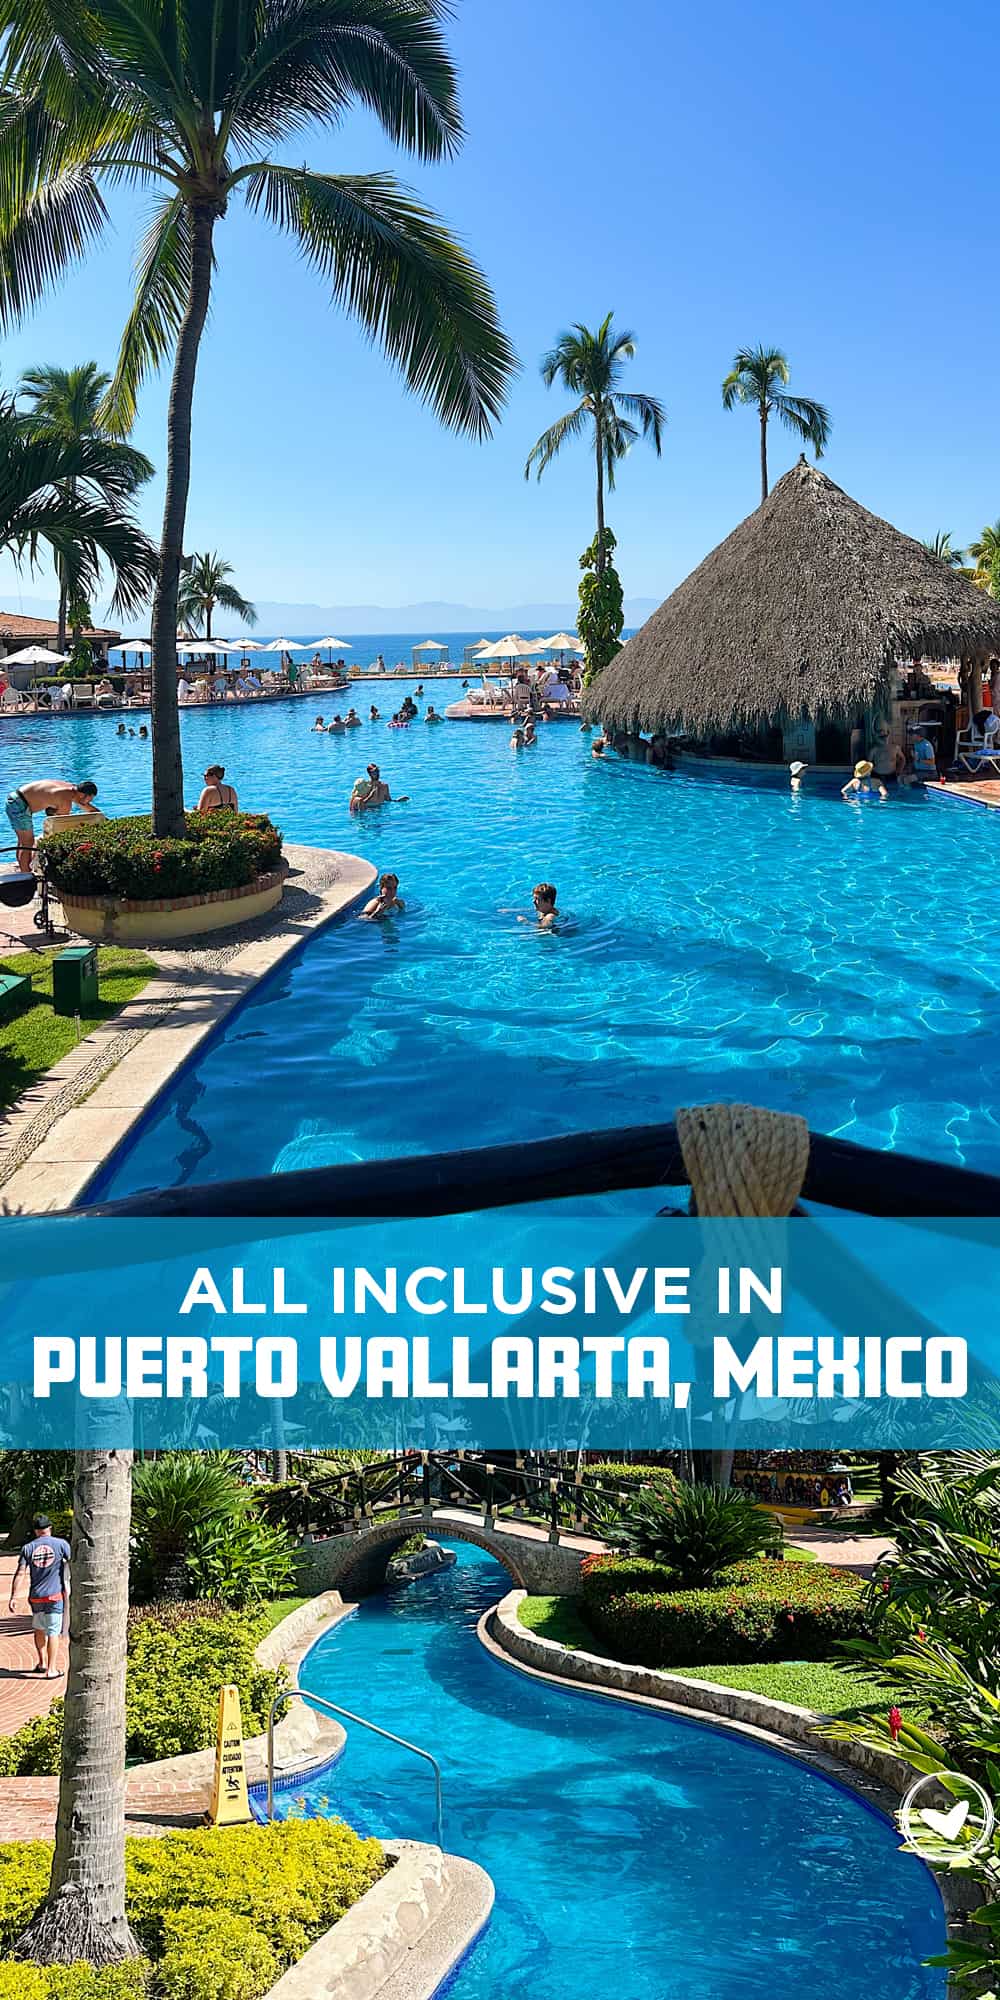 All Inclusive in Puerto Vallarta Mexico